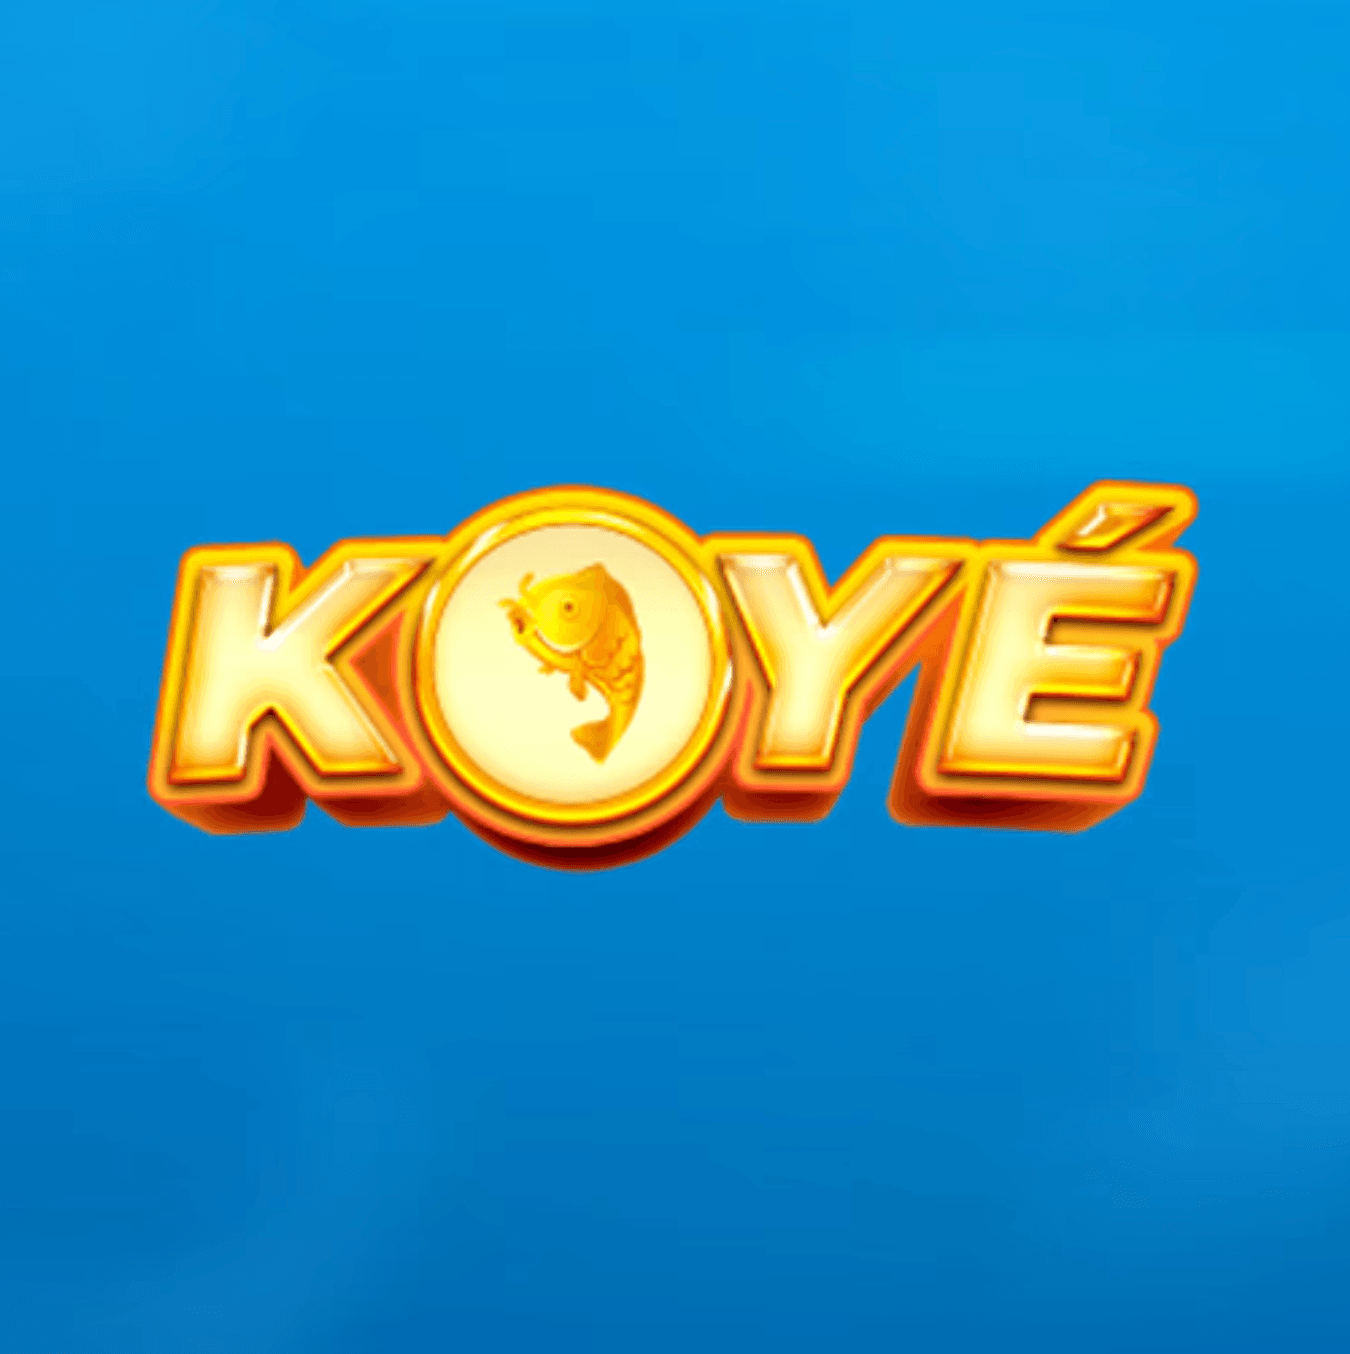 KoyeGame